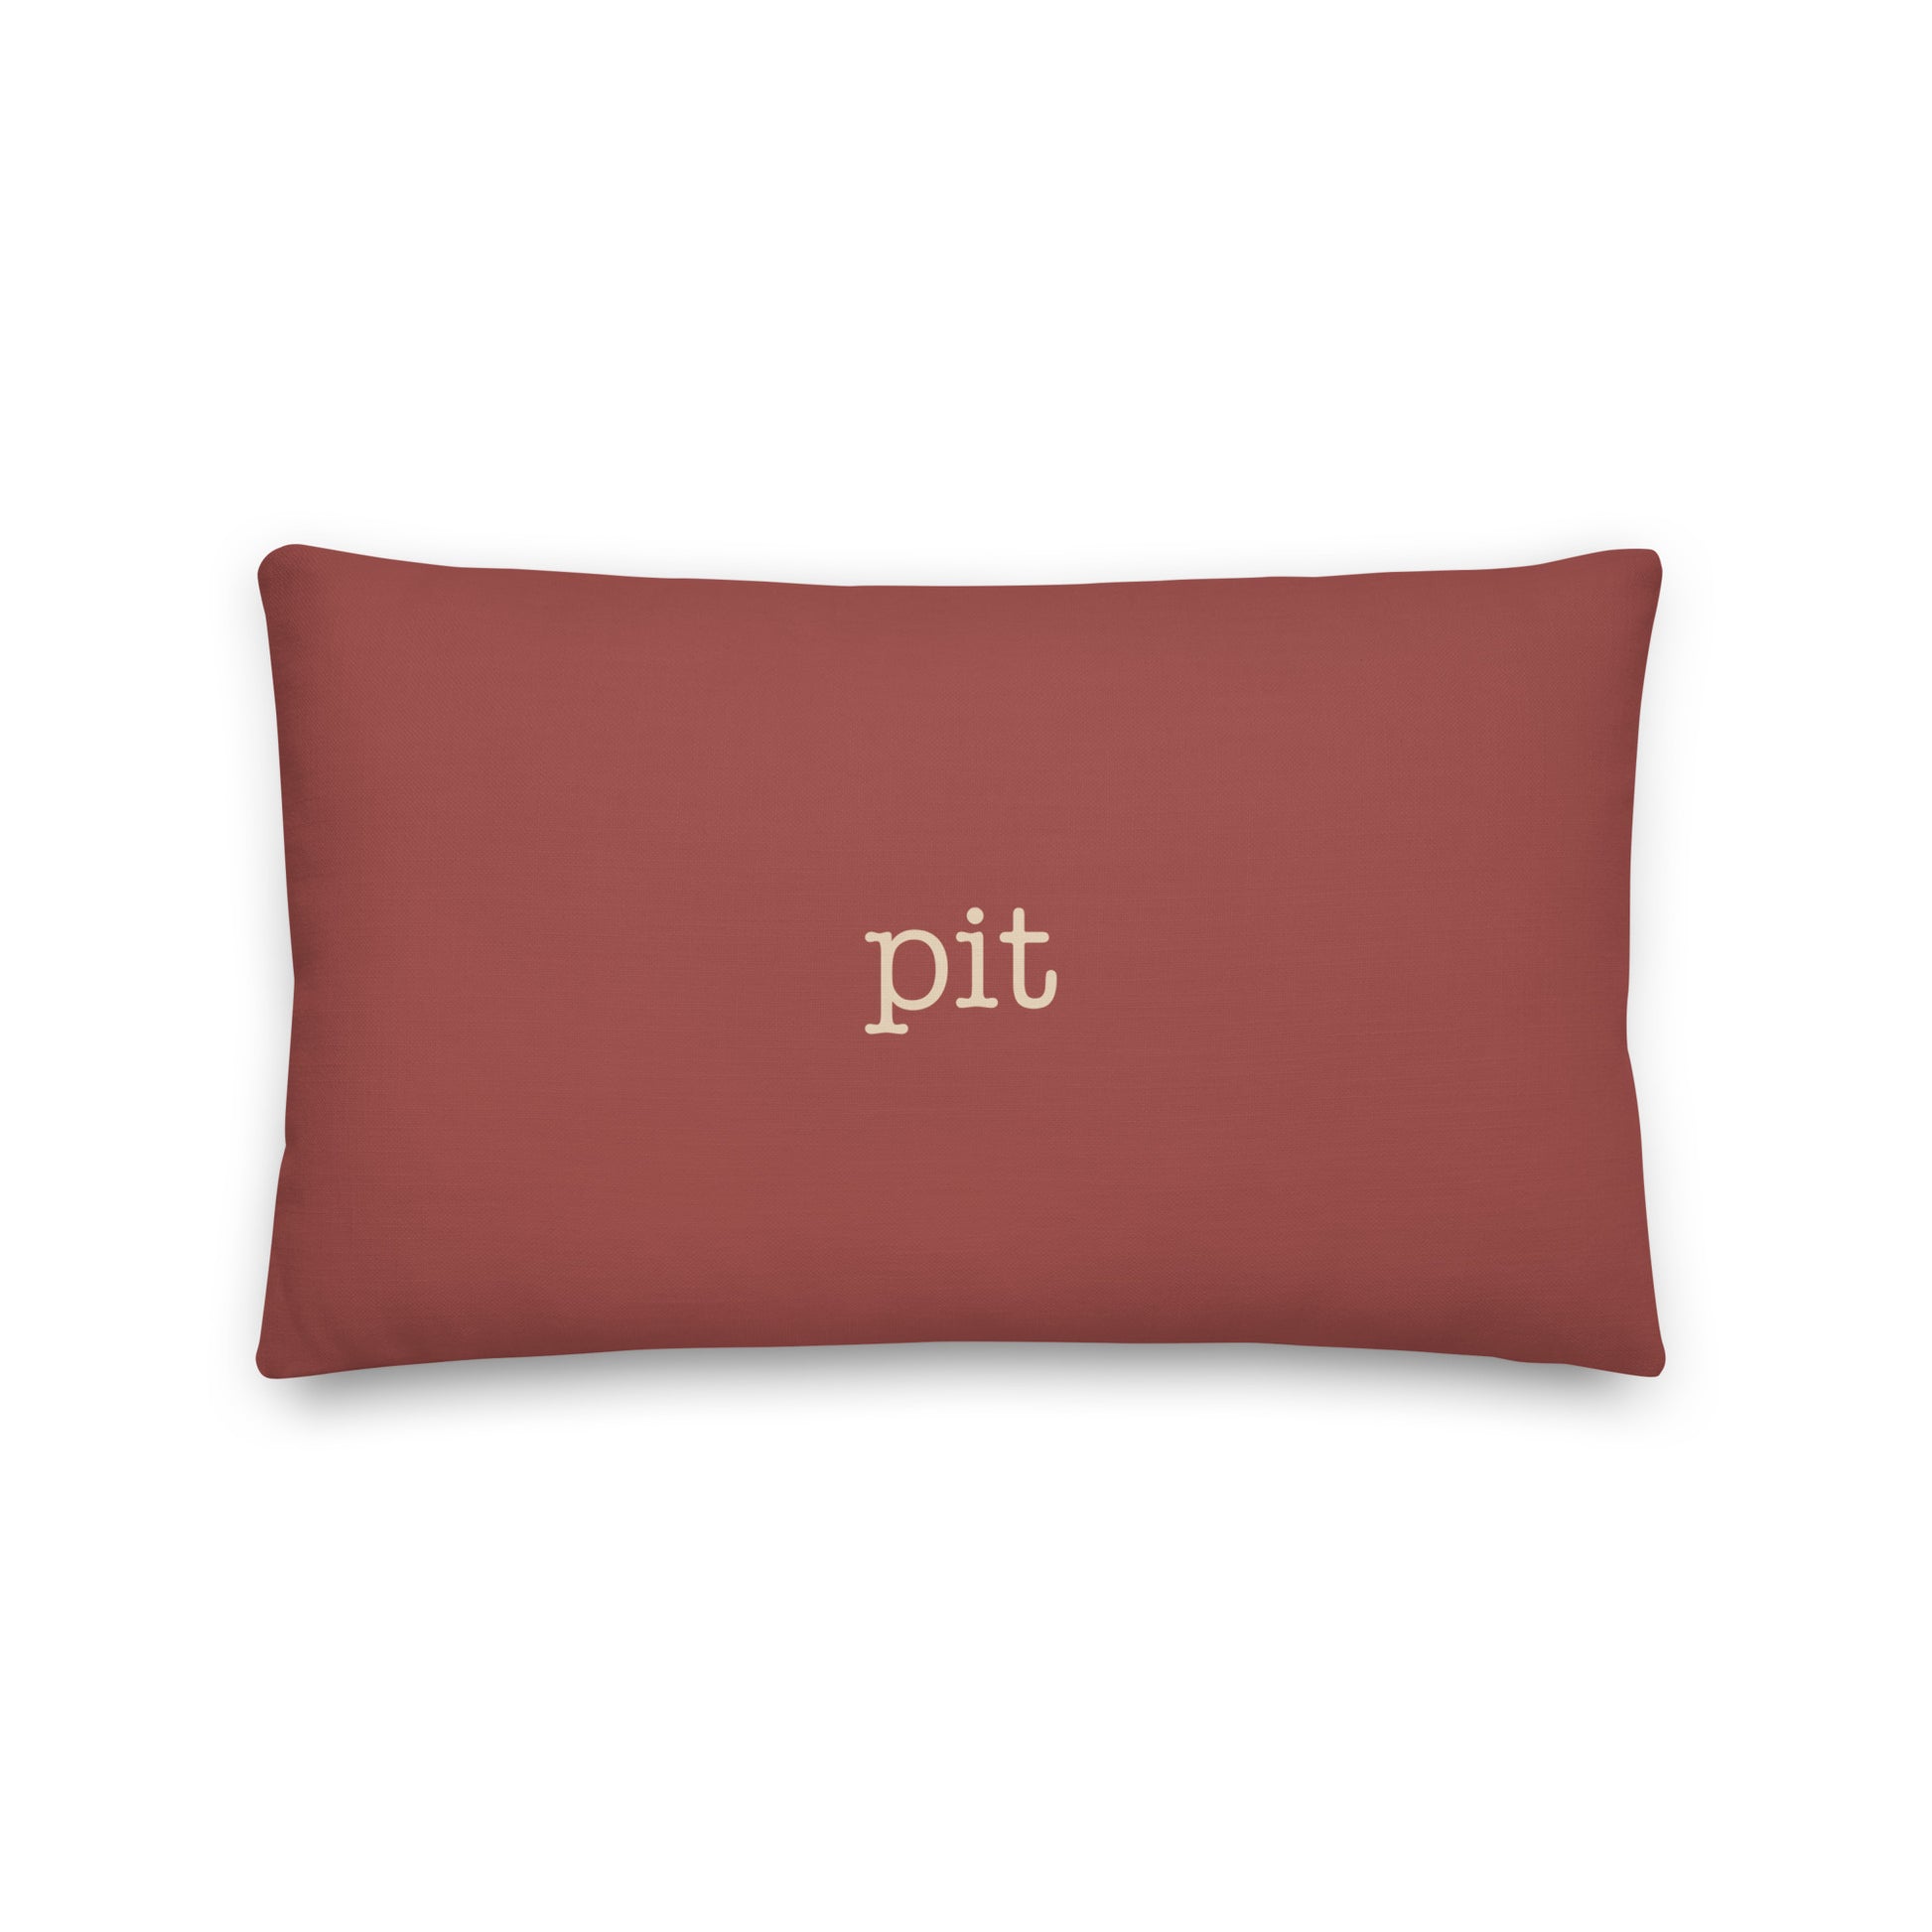 Typewriter Pillow - Terra Cotta • PIT Pittsburgh • YHM Designs - Image 02